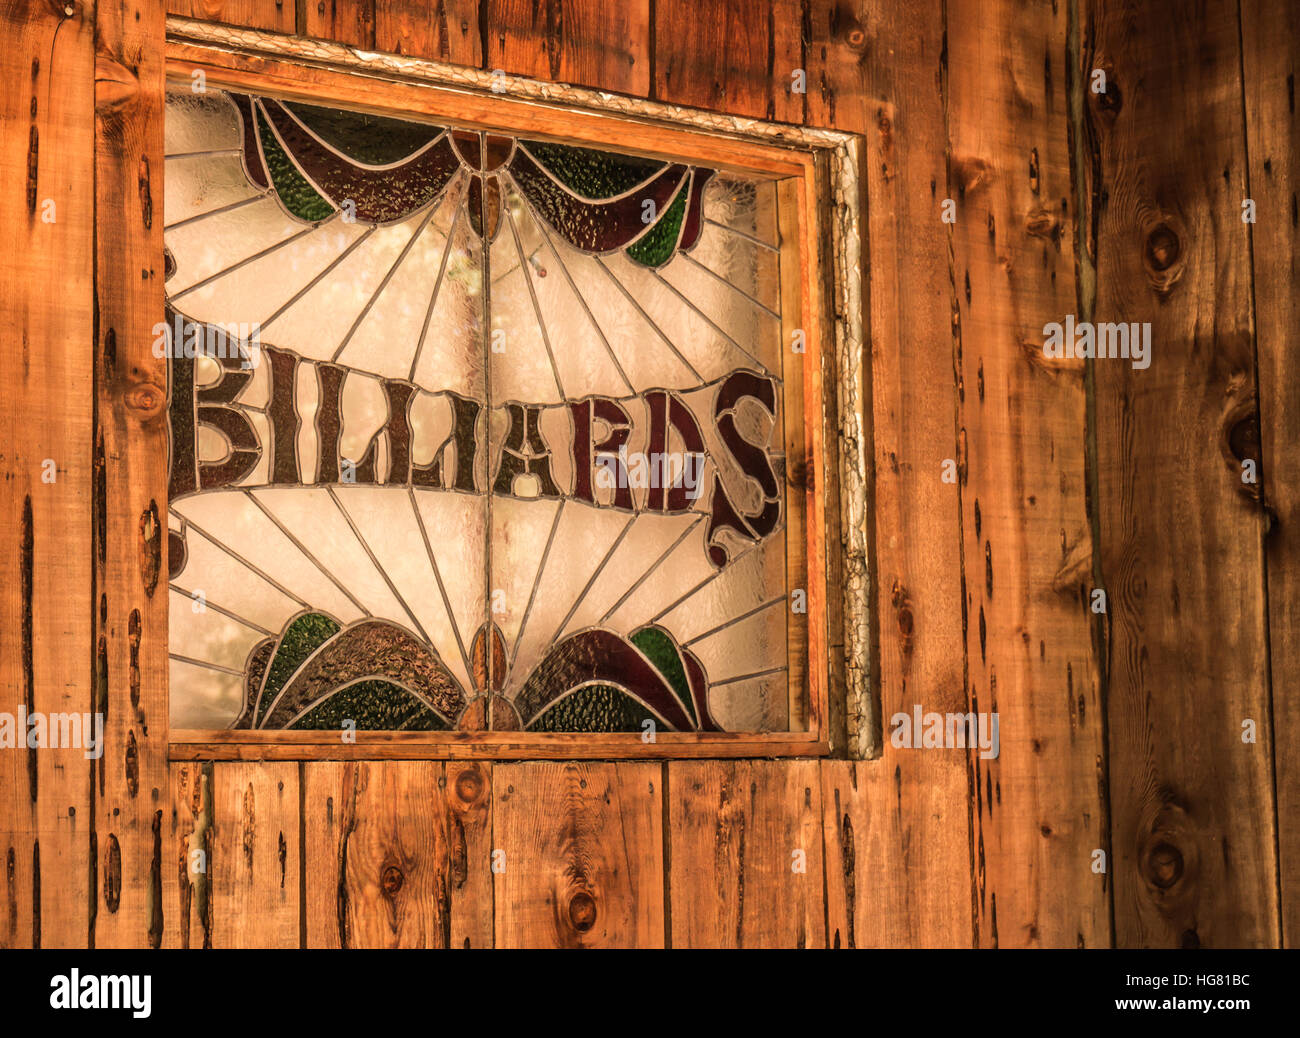 Glasmalerei Billard Schild umrahmt von Zedernholz Abstellgleis Stockfoto